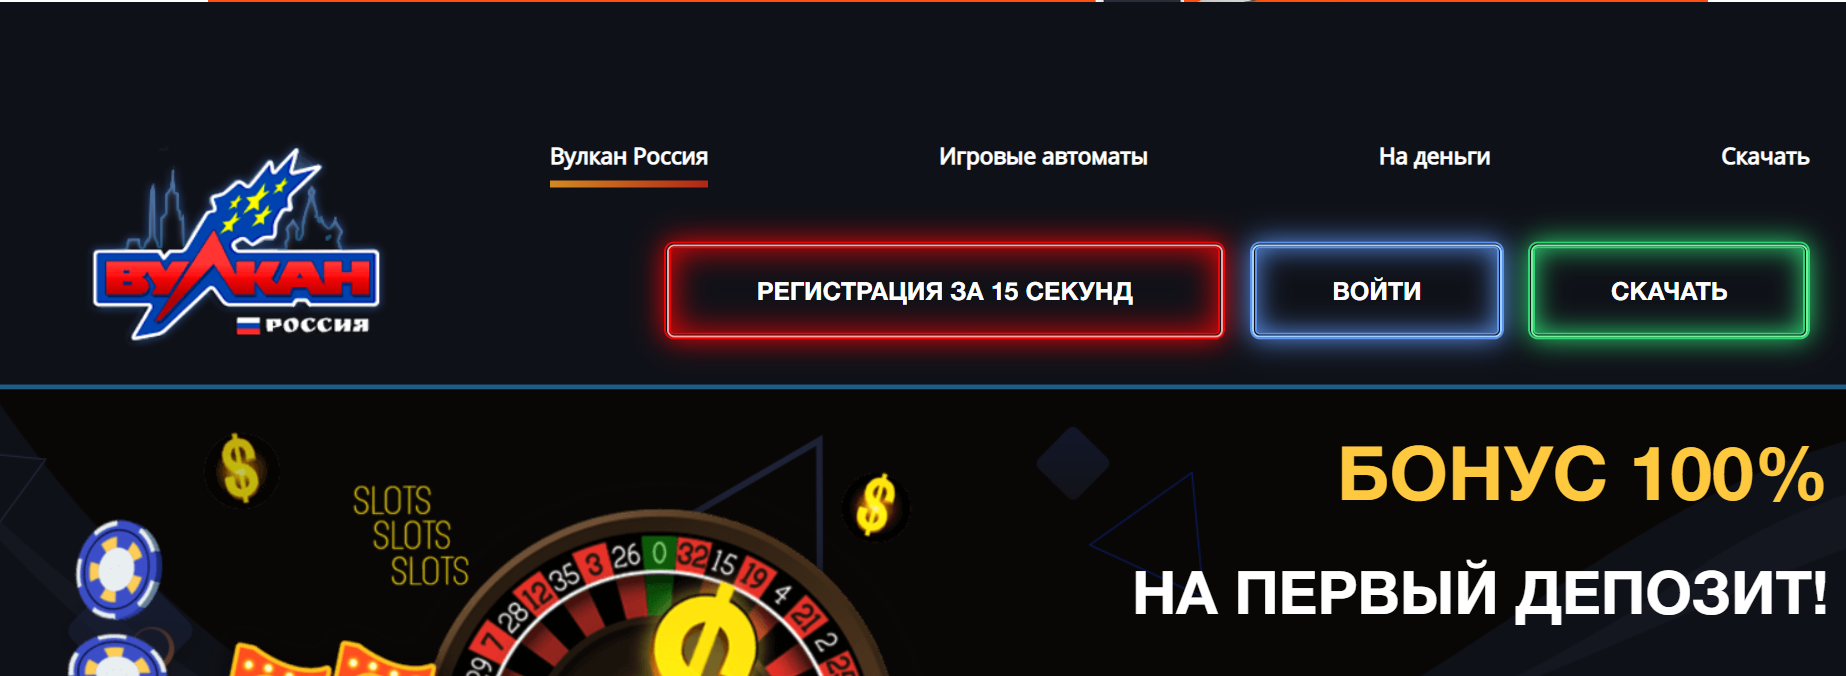 Вулкан россии казино 16 марта 2017 года casino olympic